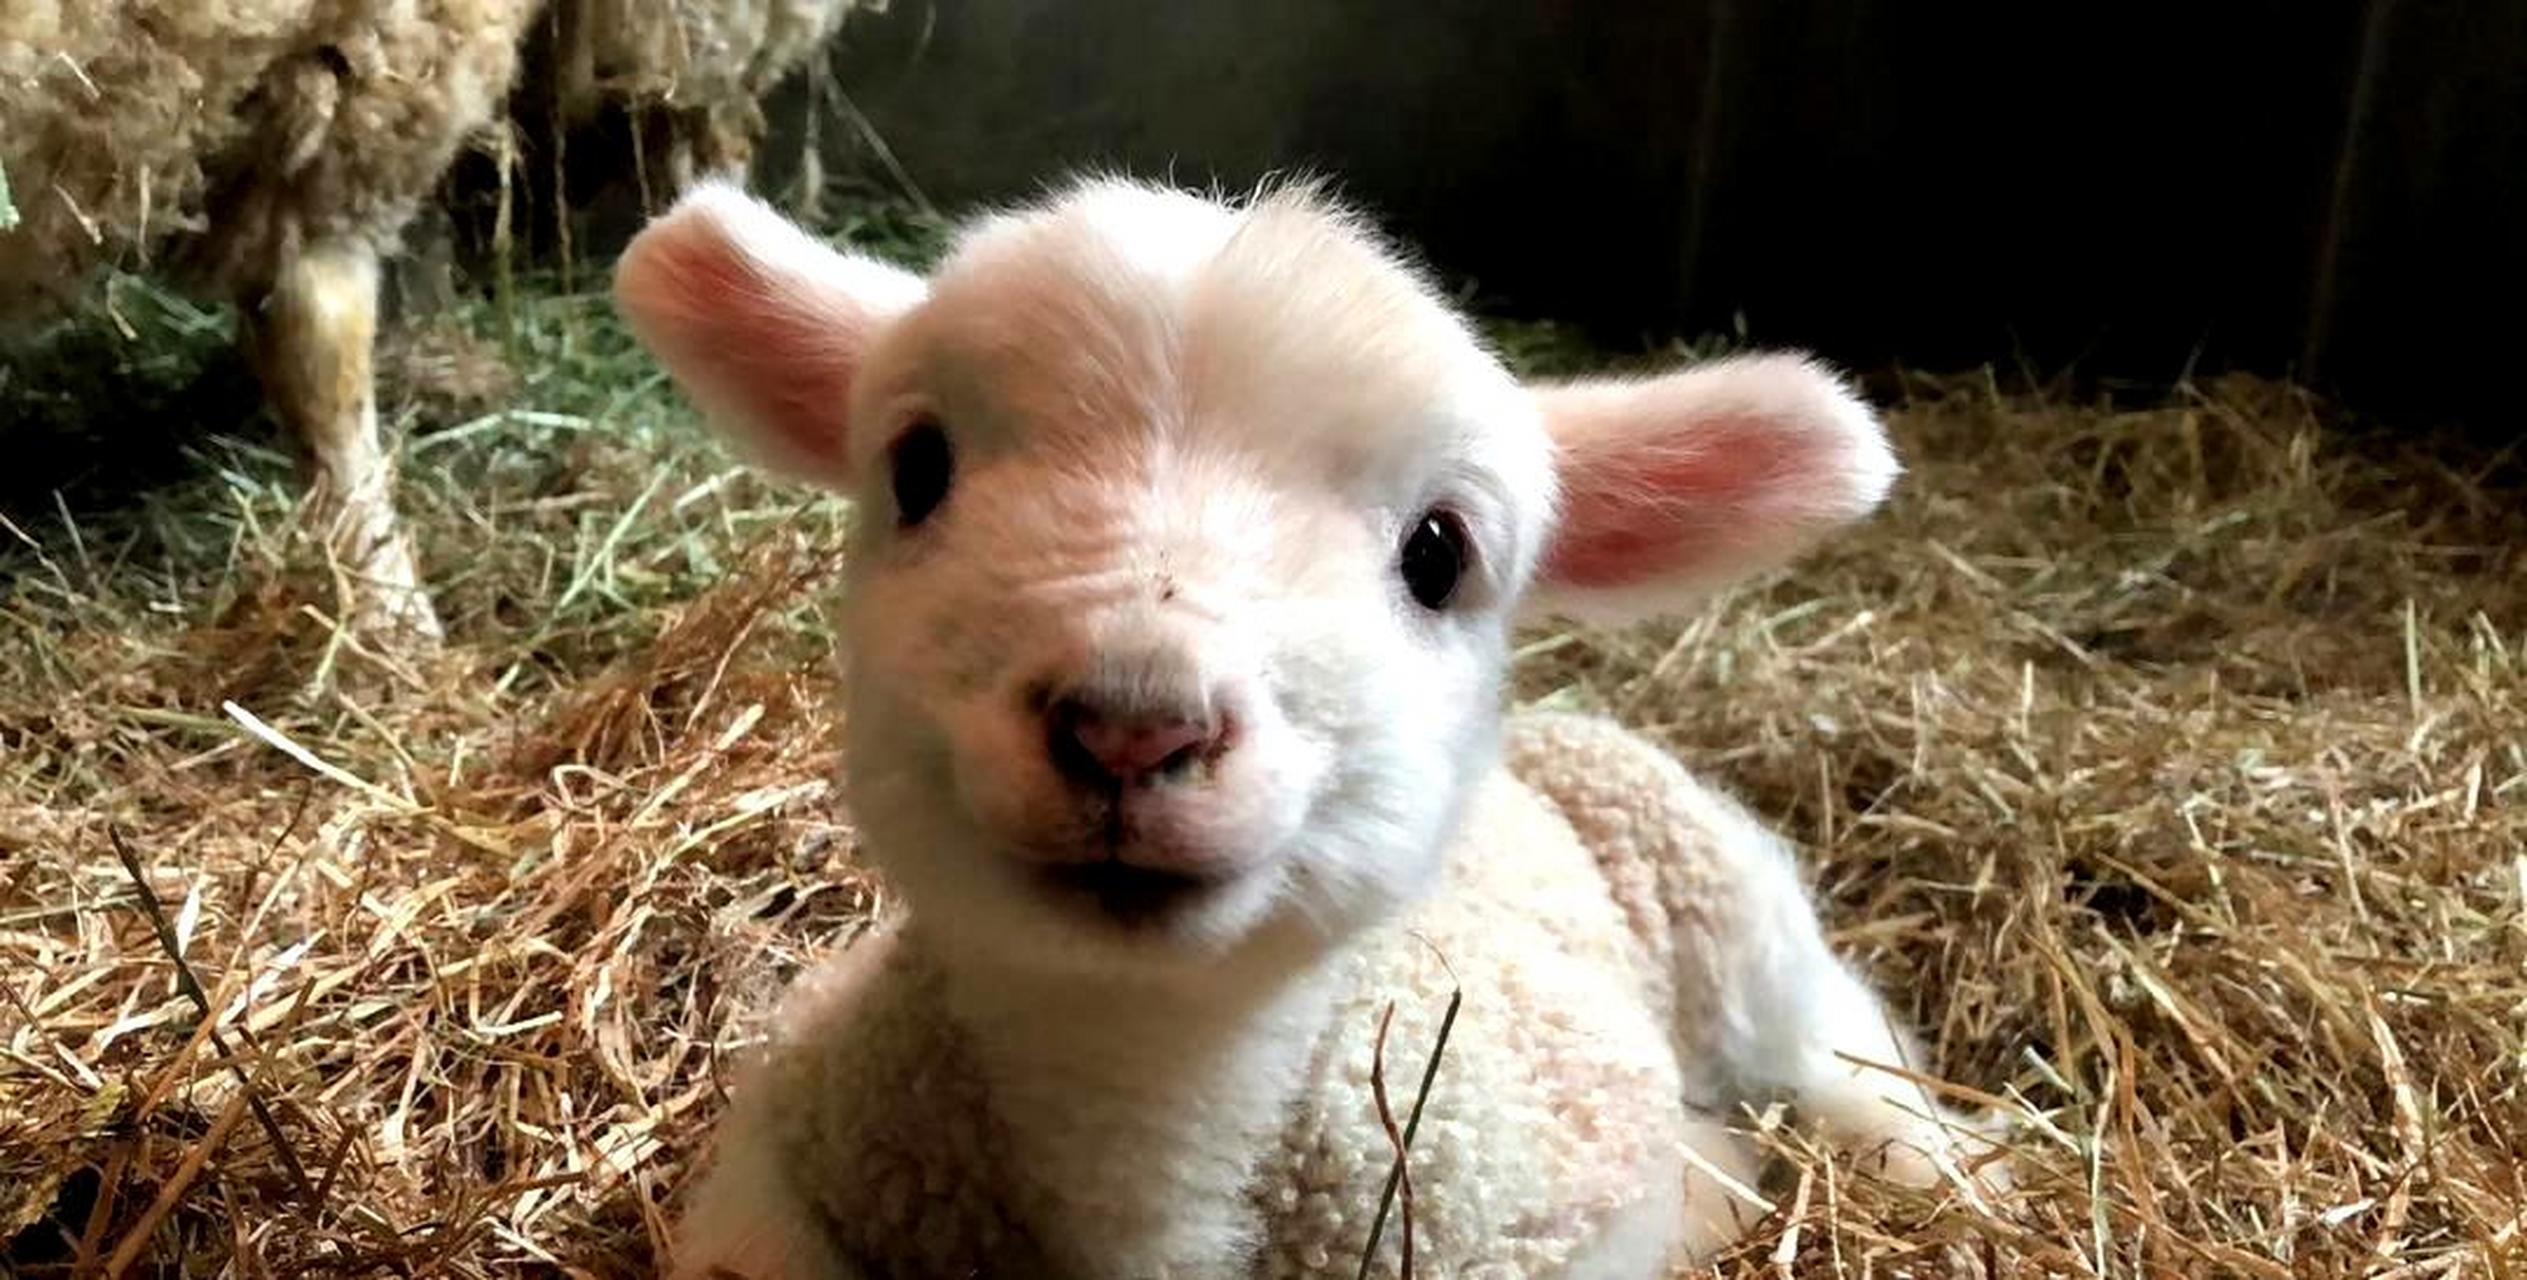 这只刚出生的小羊,像个毛绒玩具一样,太可爱了.